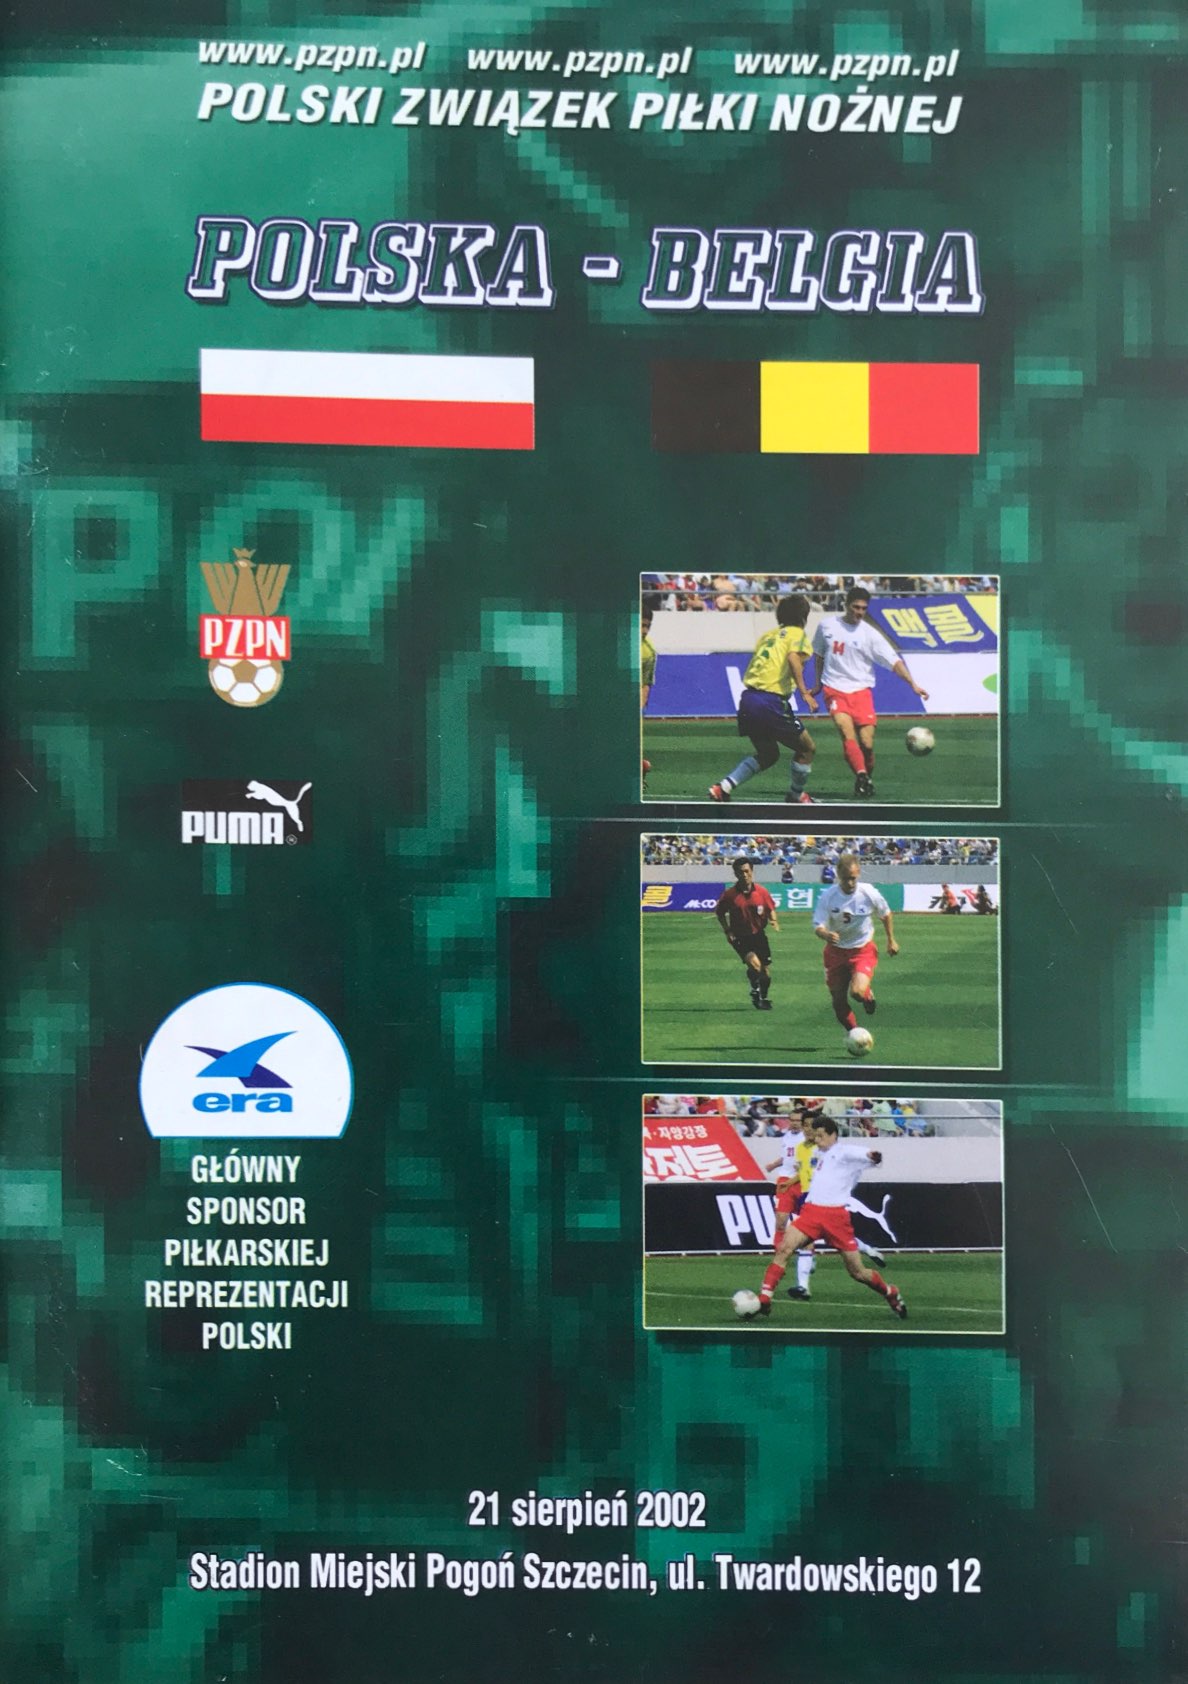 Program meczowy Polska - Belgia 1:1 (21.08.2002).